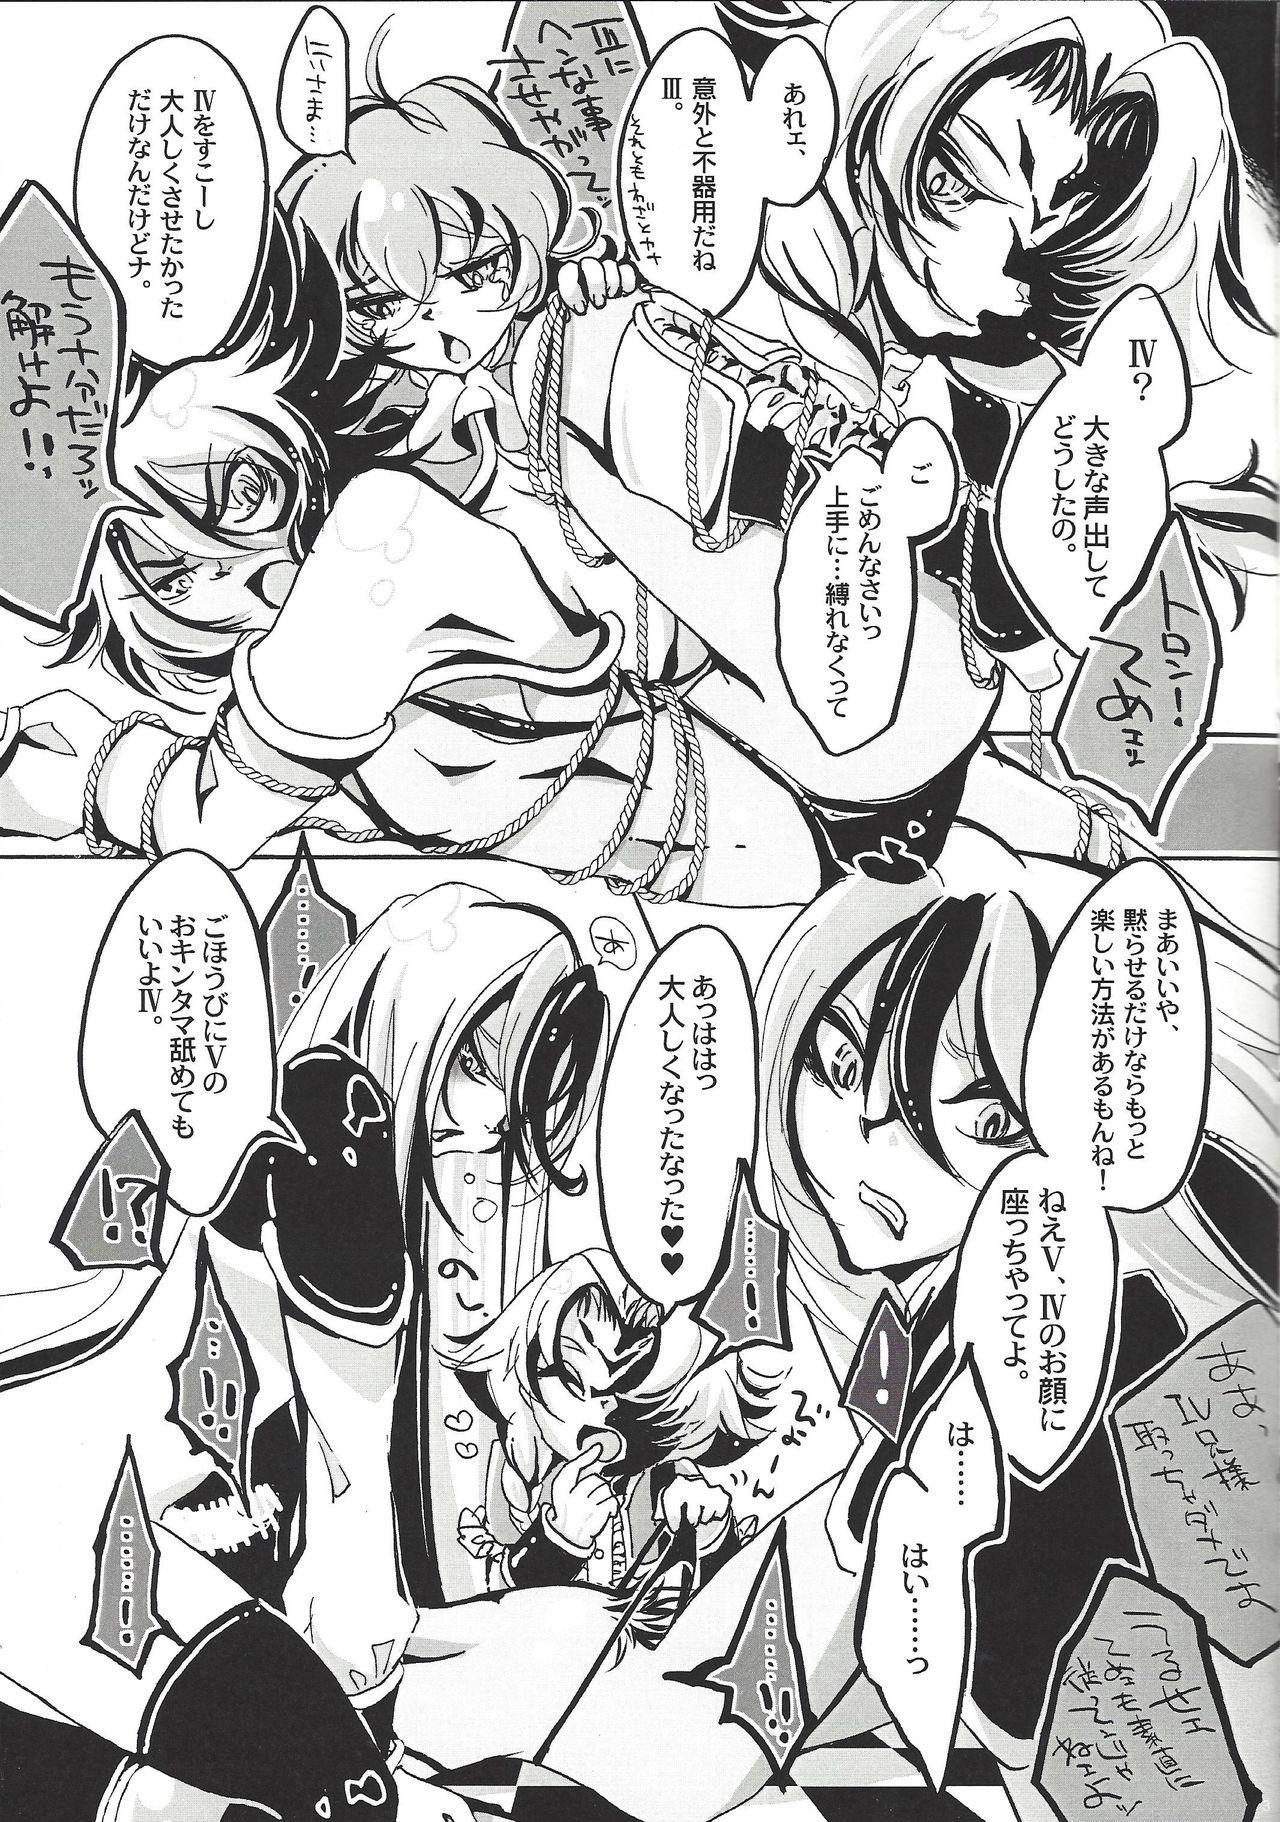 Chaturbate Bokura, zetsubo no mayoigo ni natte - Yu-gi-oh zexal Trannies - Page 4